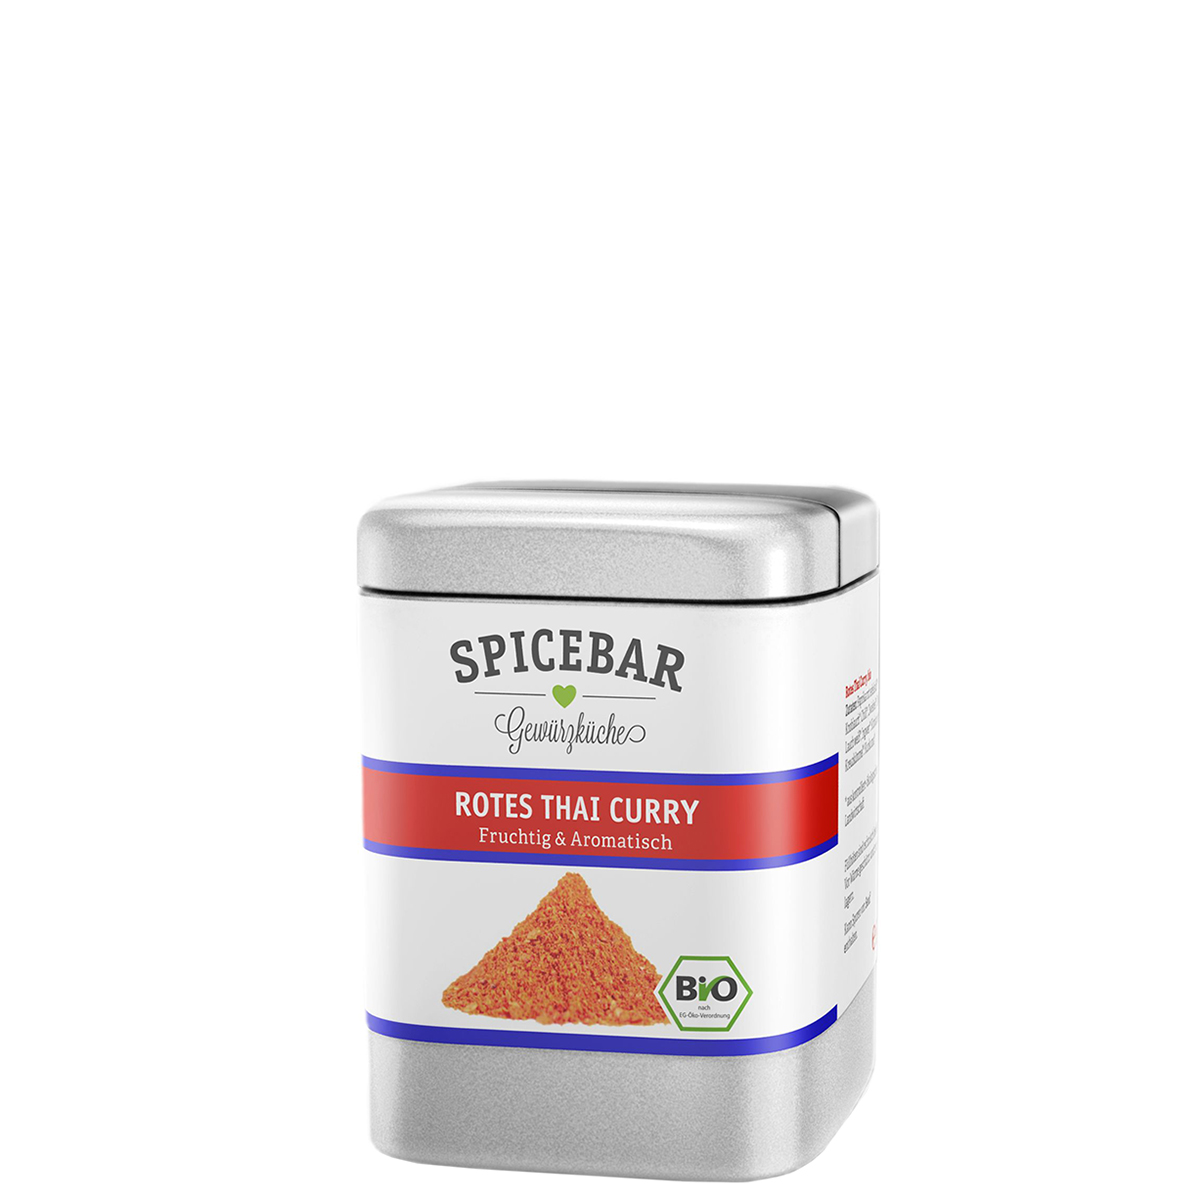 Spicebar Rotes Thai Curry, bio Inhalt 80g